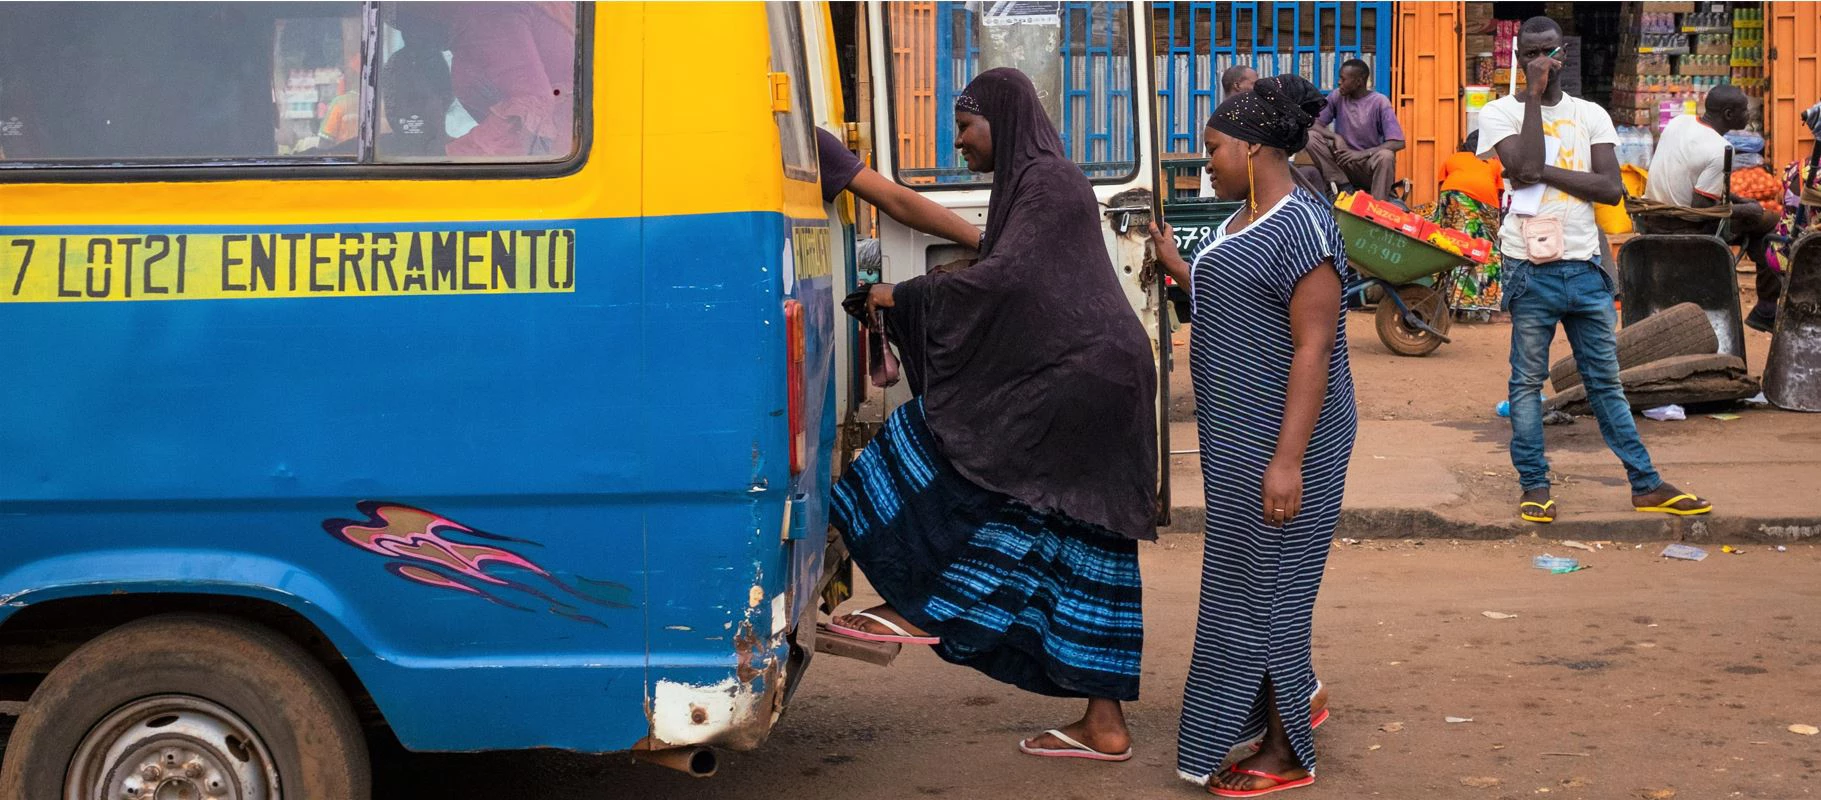 Women boarding public transport in Guinea-Bissau | © TLF images, Shutterstock